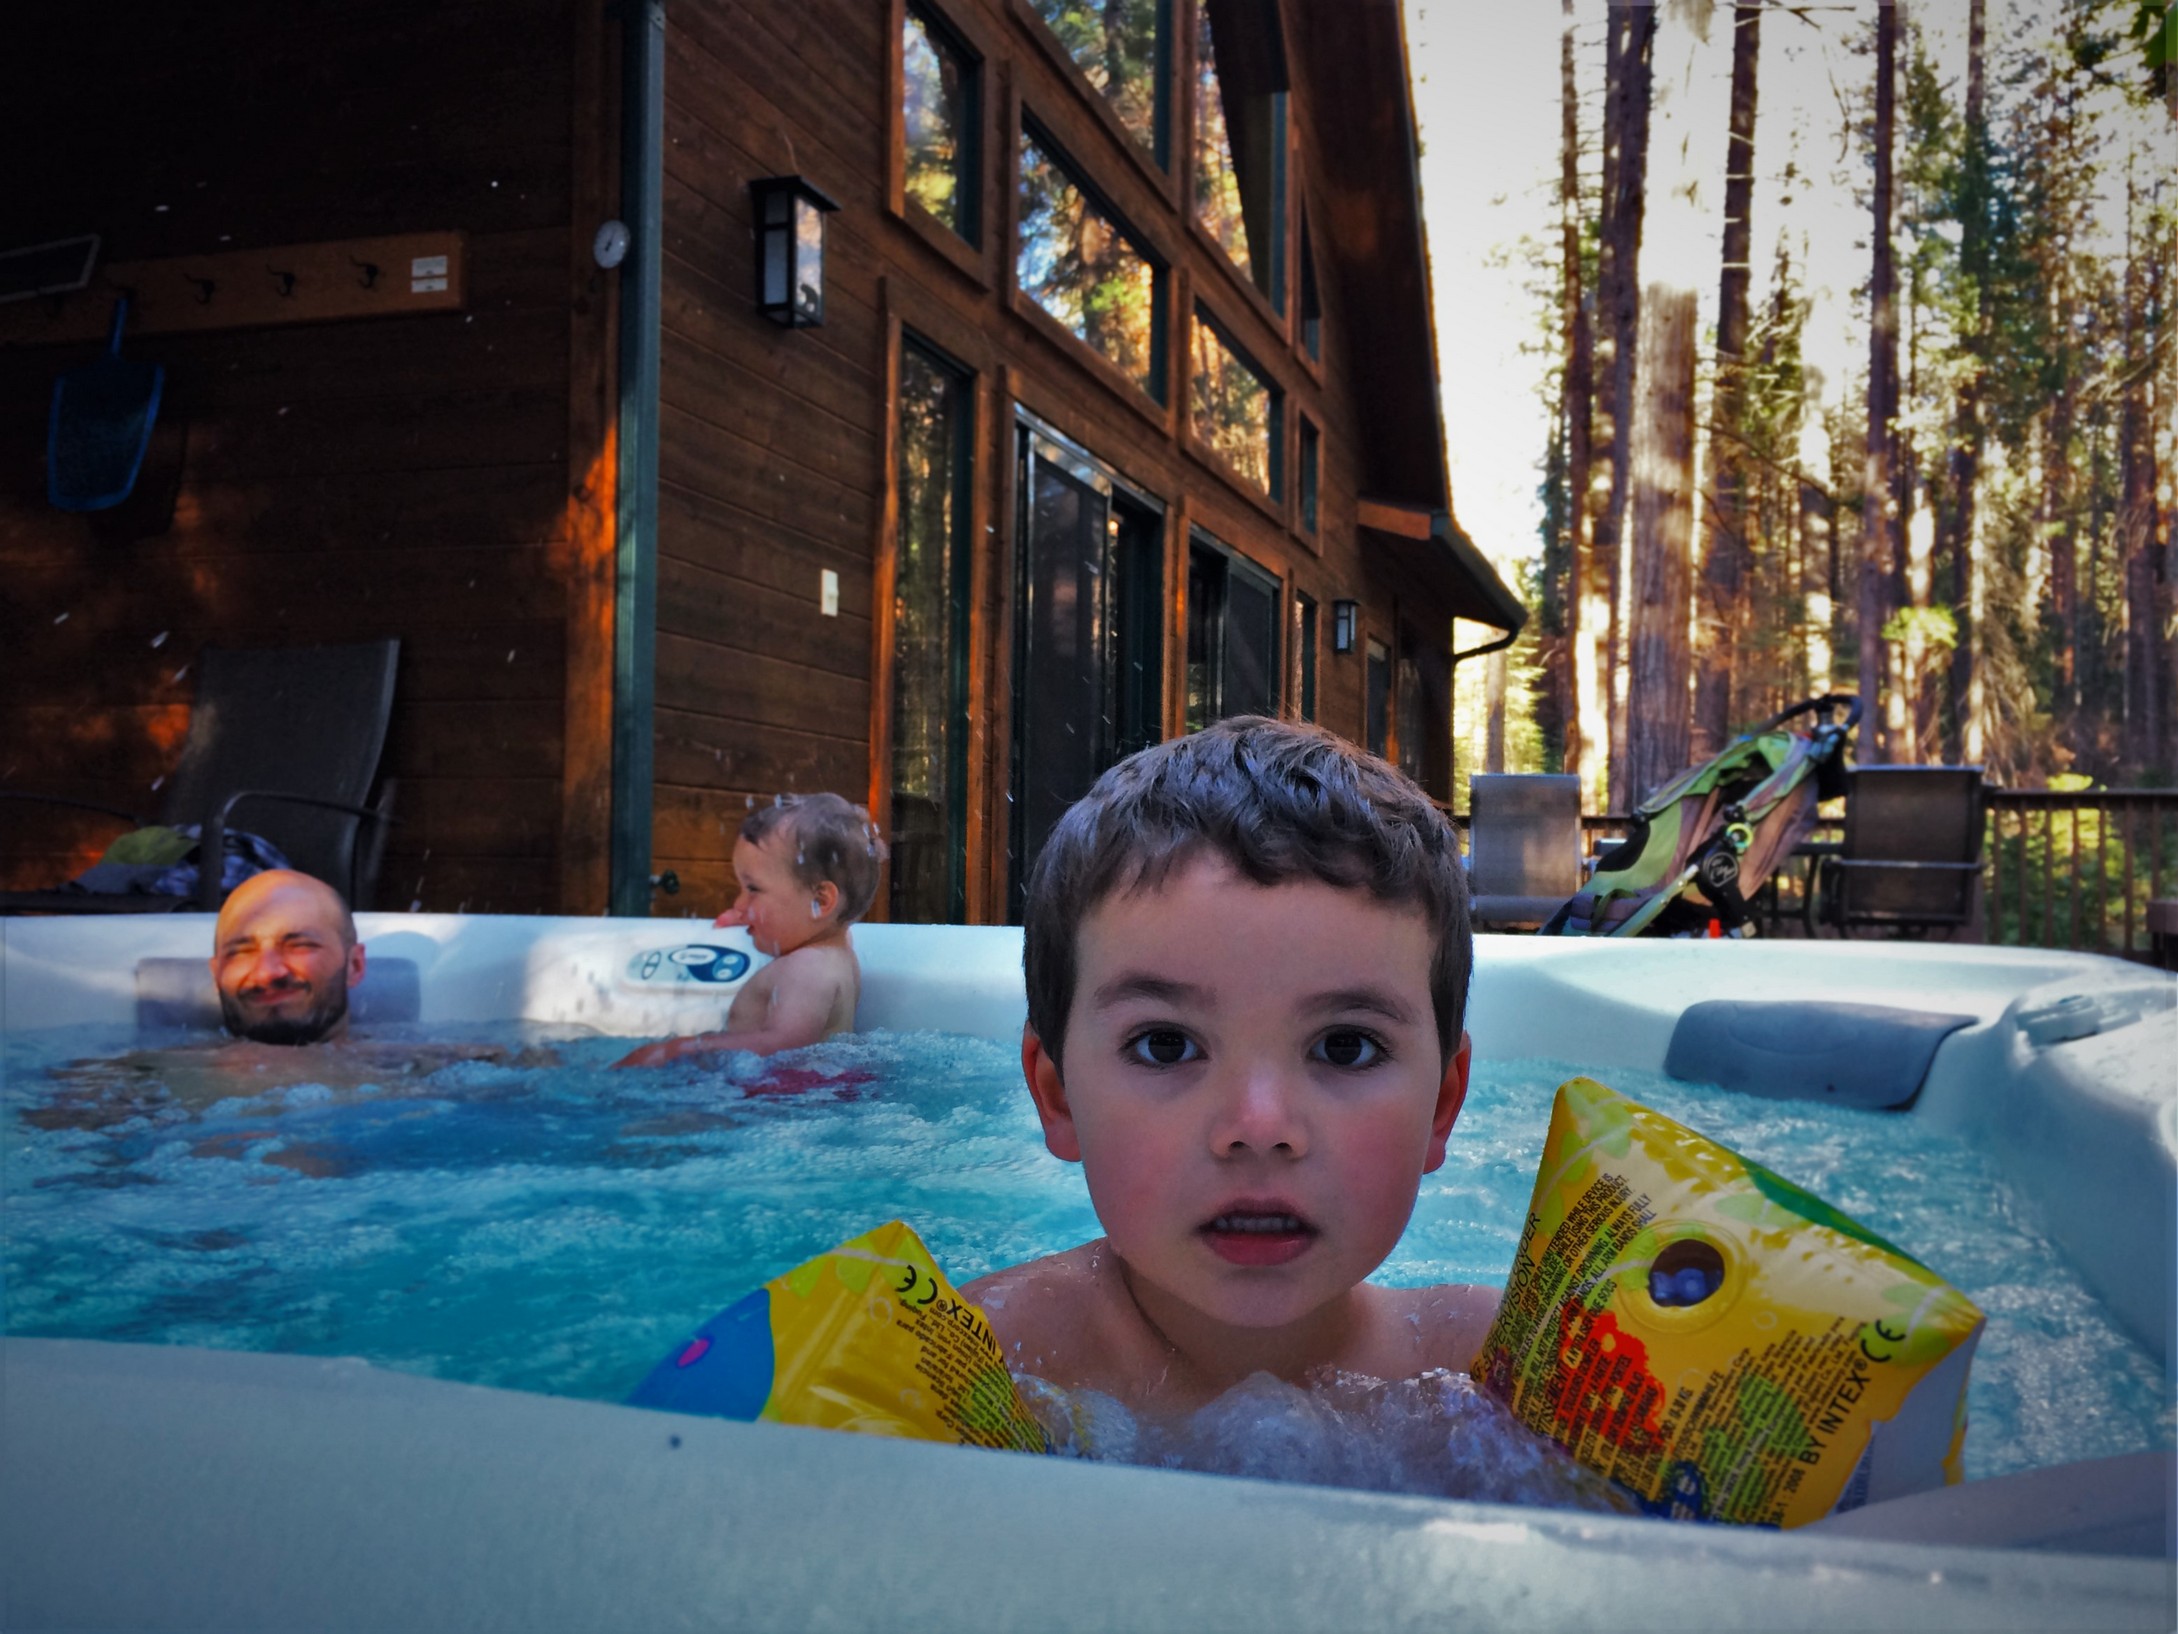 Taylor Family in Hot tub at John Muir House at Evergreen Lodge at Yosemite National Park 2